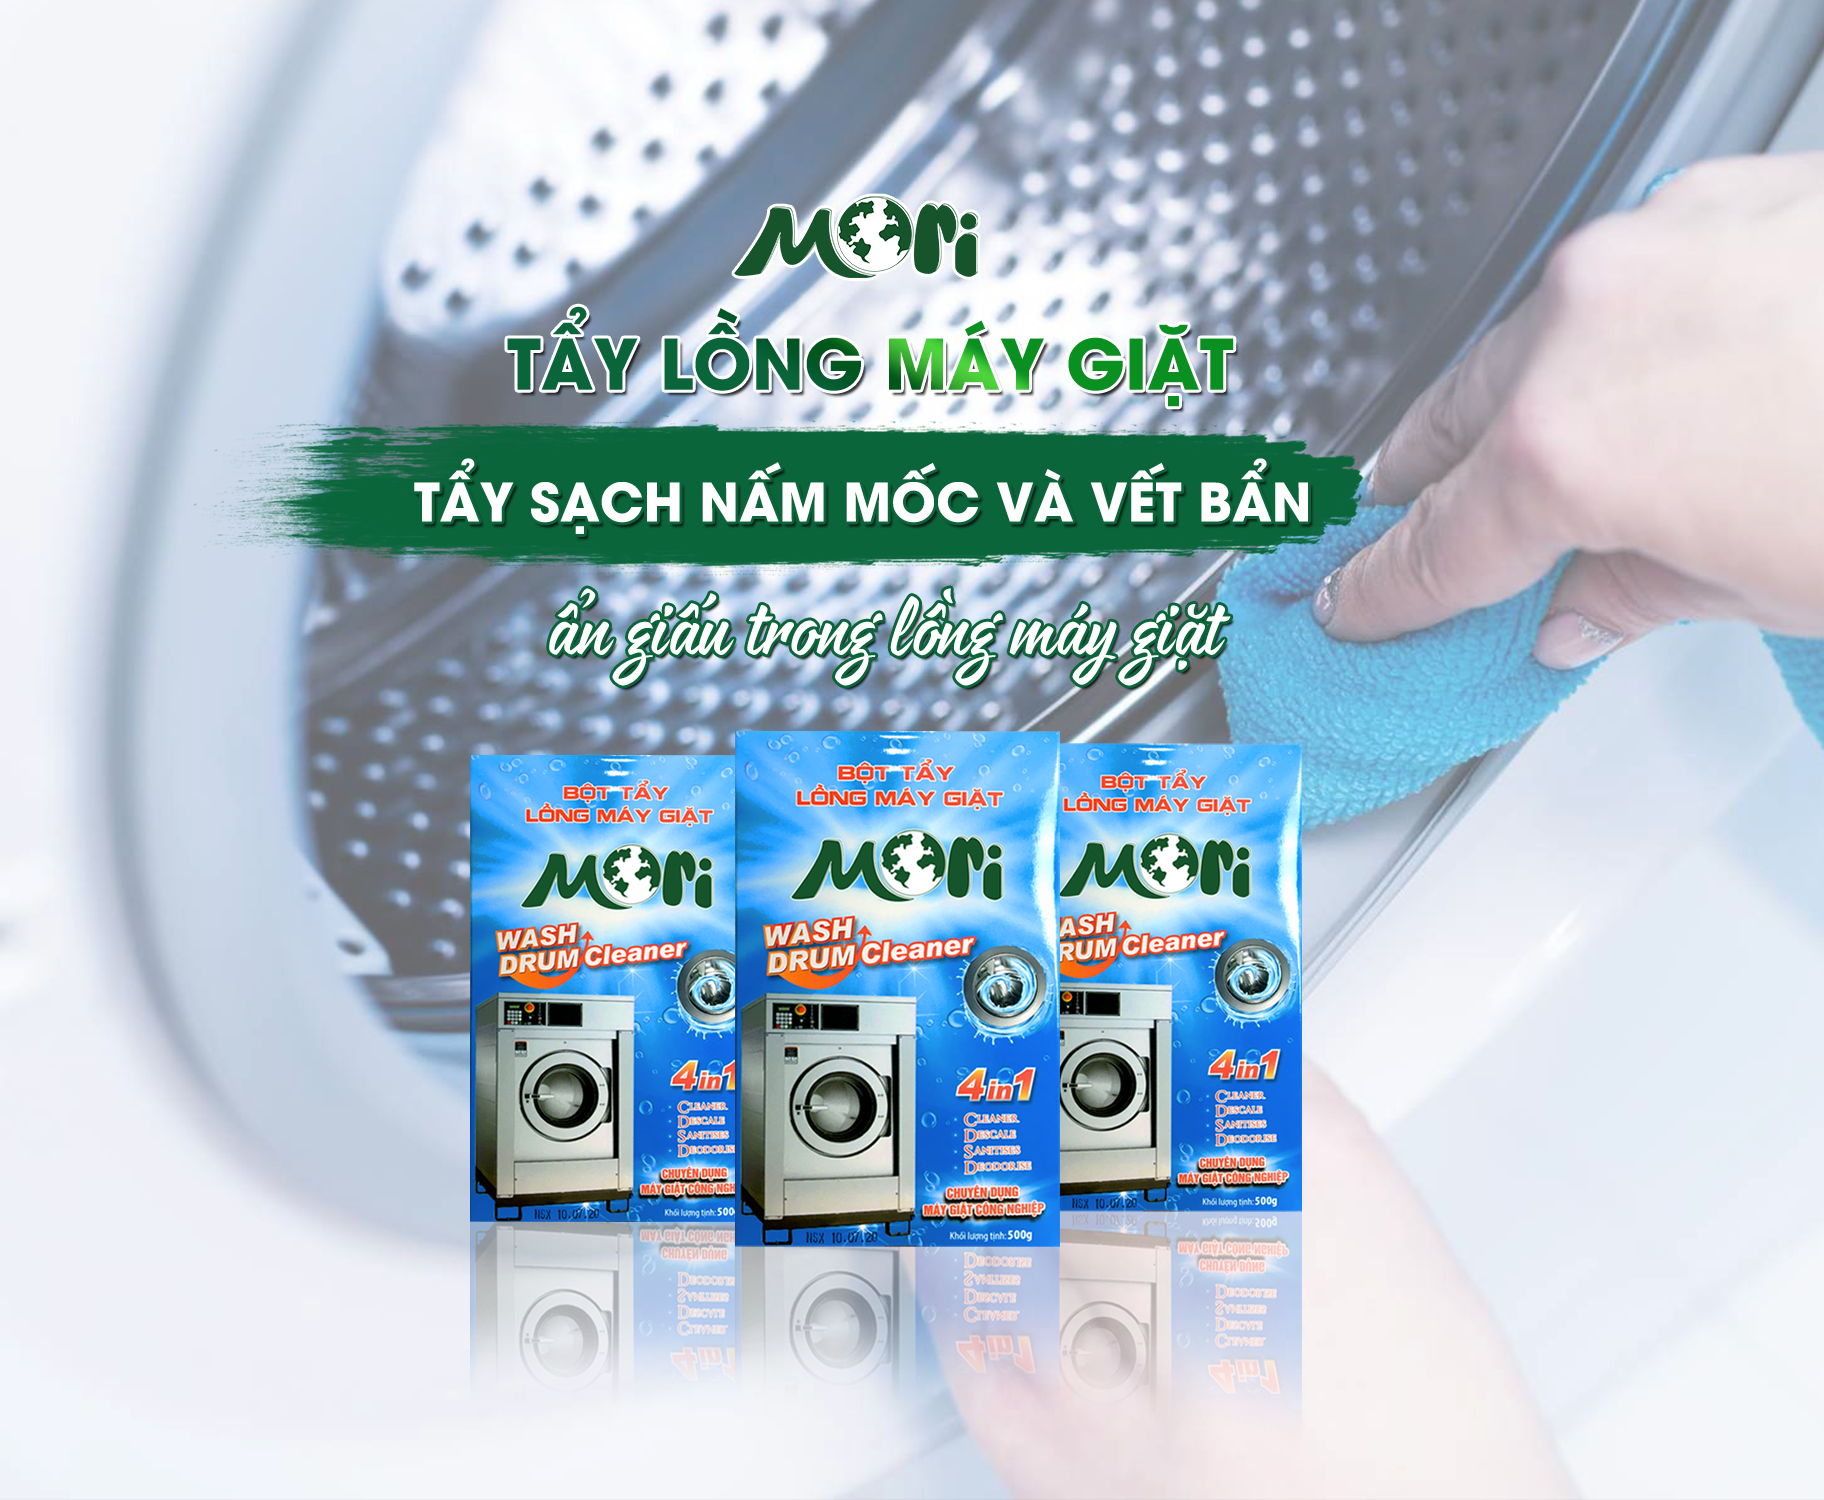 Bột tẩy lồng máy giặt Mori – tẩy sạch nấm mốc và vết bẩn